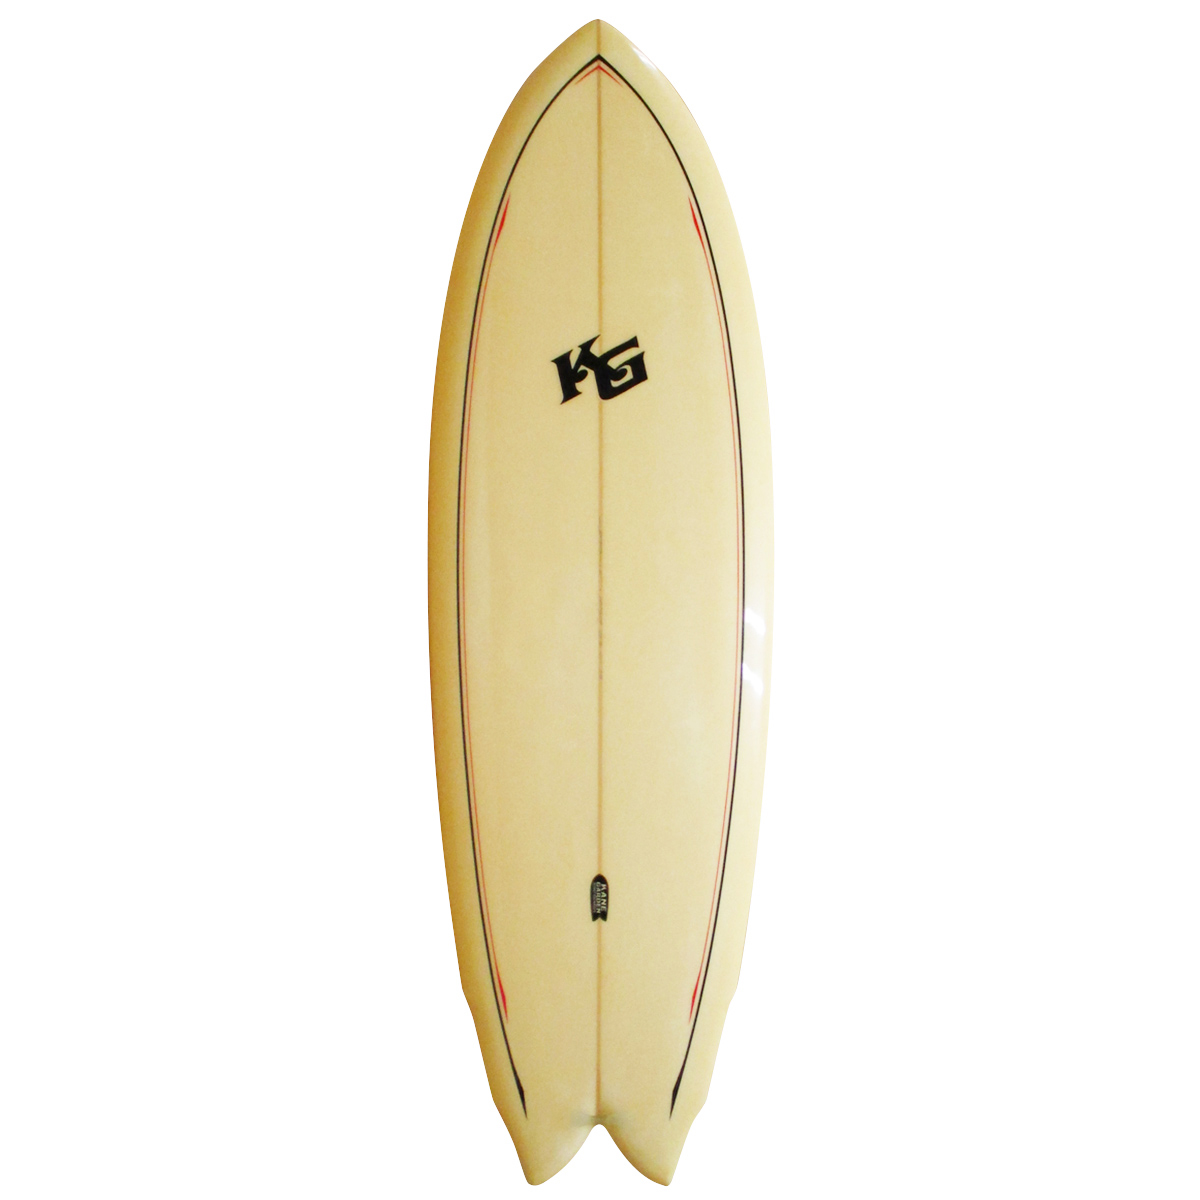 KANE GARDEN SURFBOARDS / KANE GARDEN / Twinzer Fish 5`9 shaped by Larry Mabil